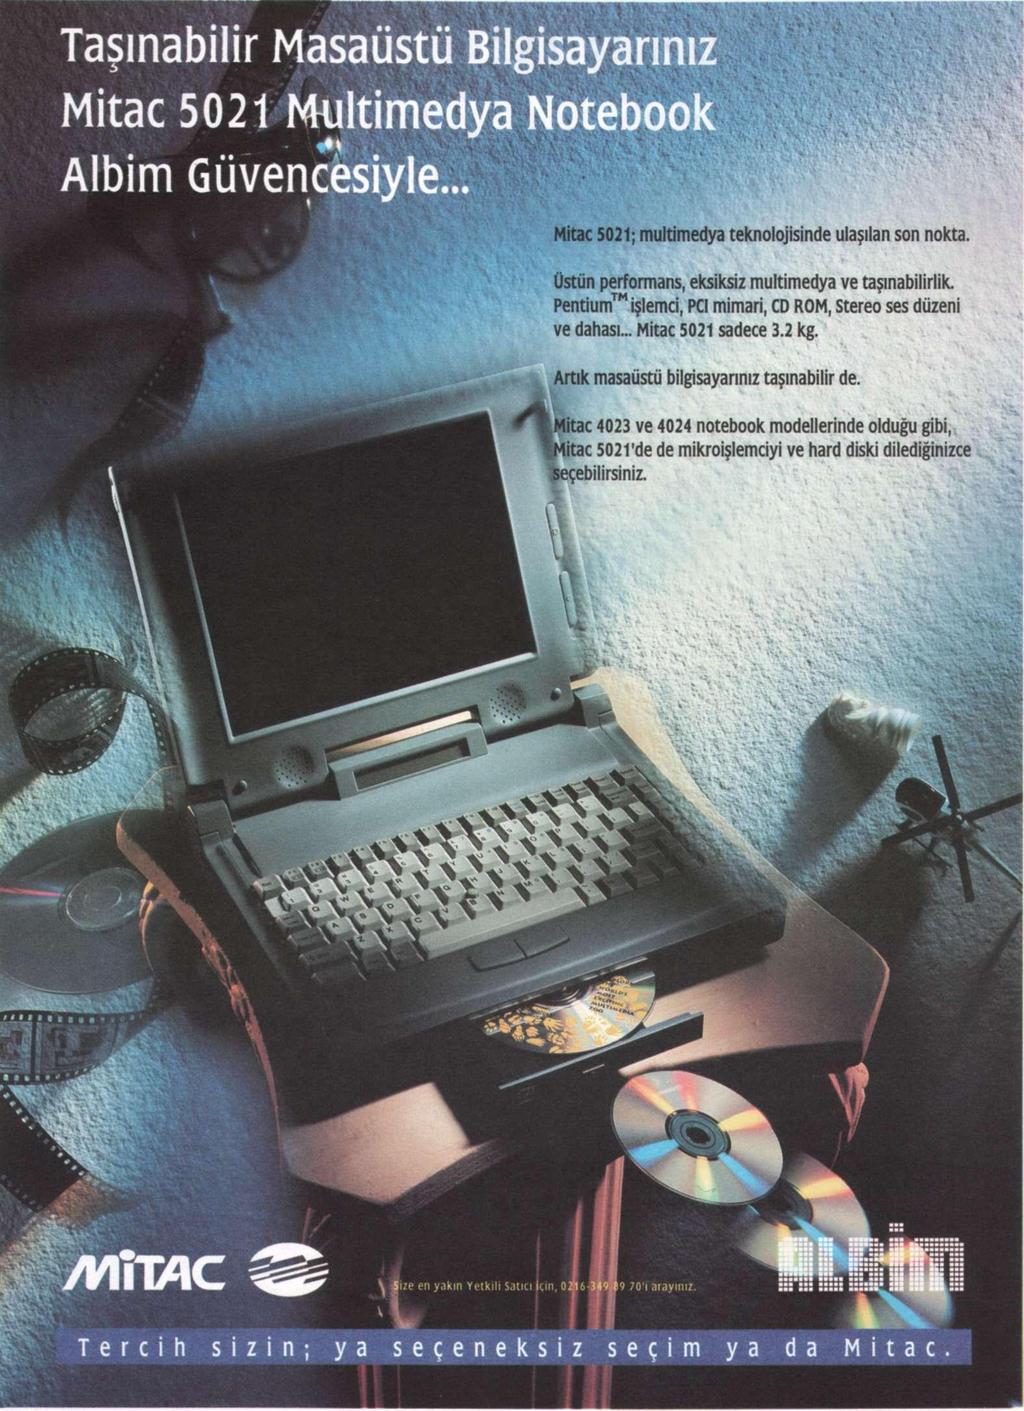 16 haber 6-12 Kasım 1995- Sayı: 41 Digital'ın kişisel işistasyonu yaklaşımı Digital Türkiye, tüm dünyada duyurduğu yüksek performanslı kişisel bilgisayar se Güvener, gelişen pazarda kişisel